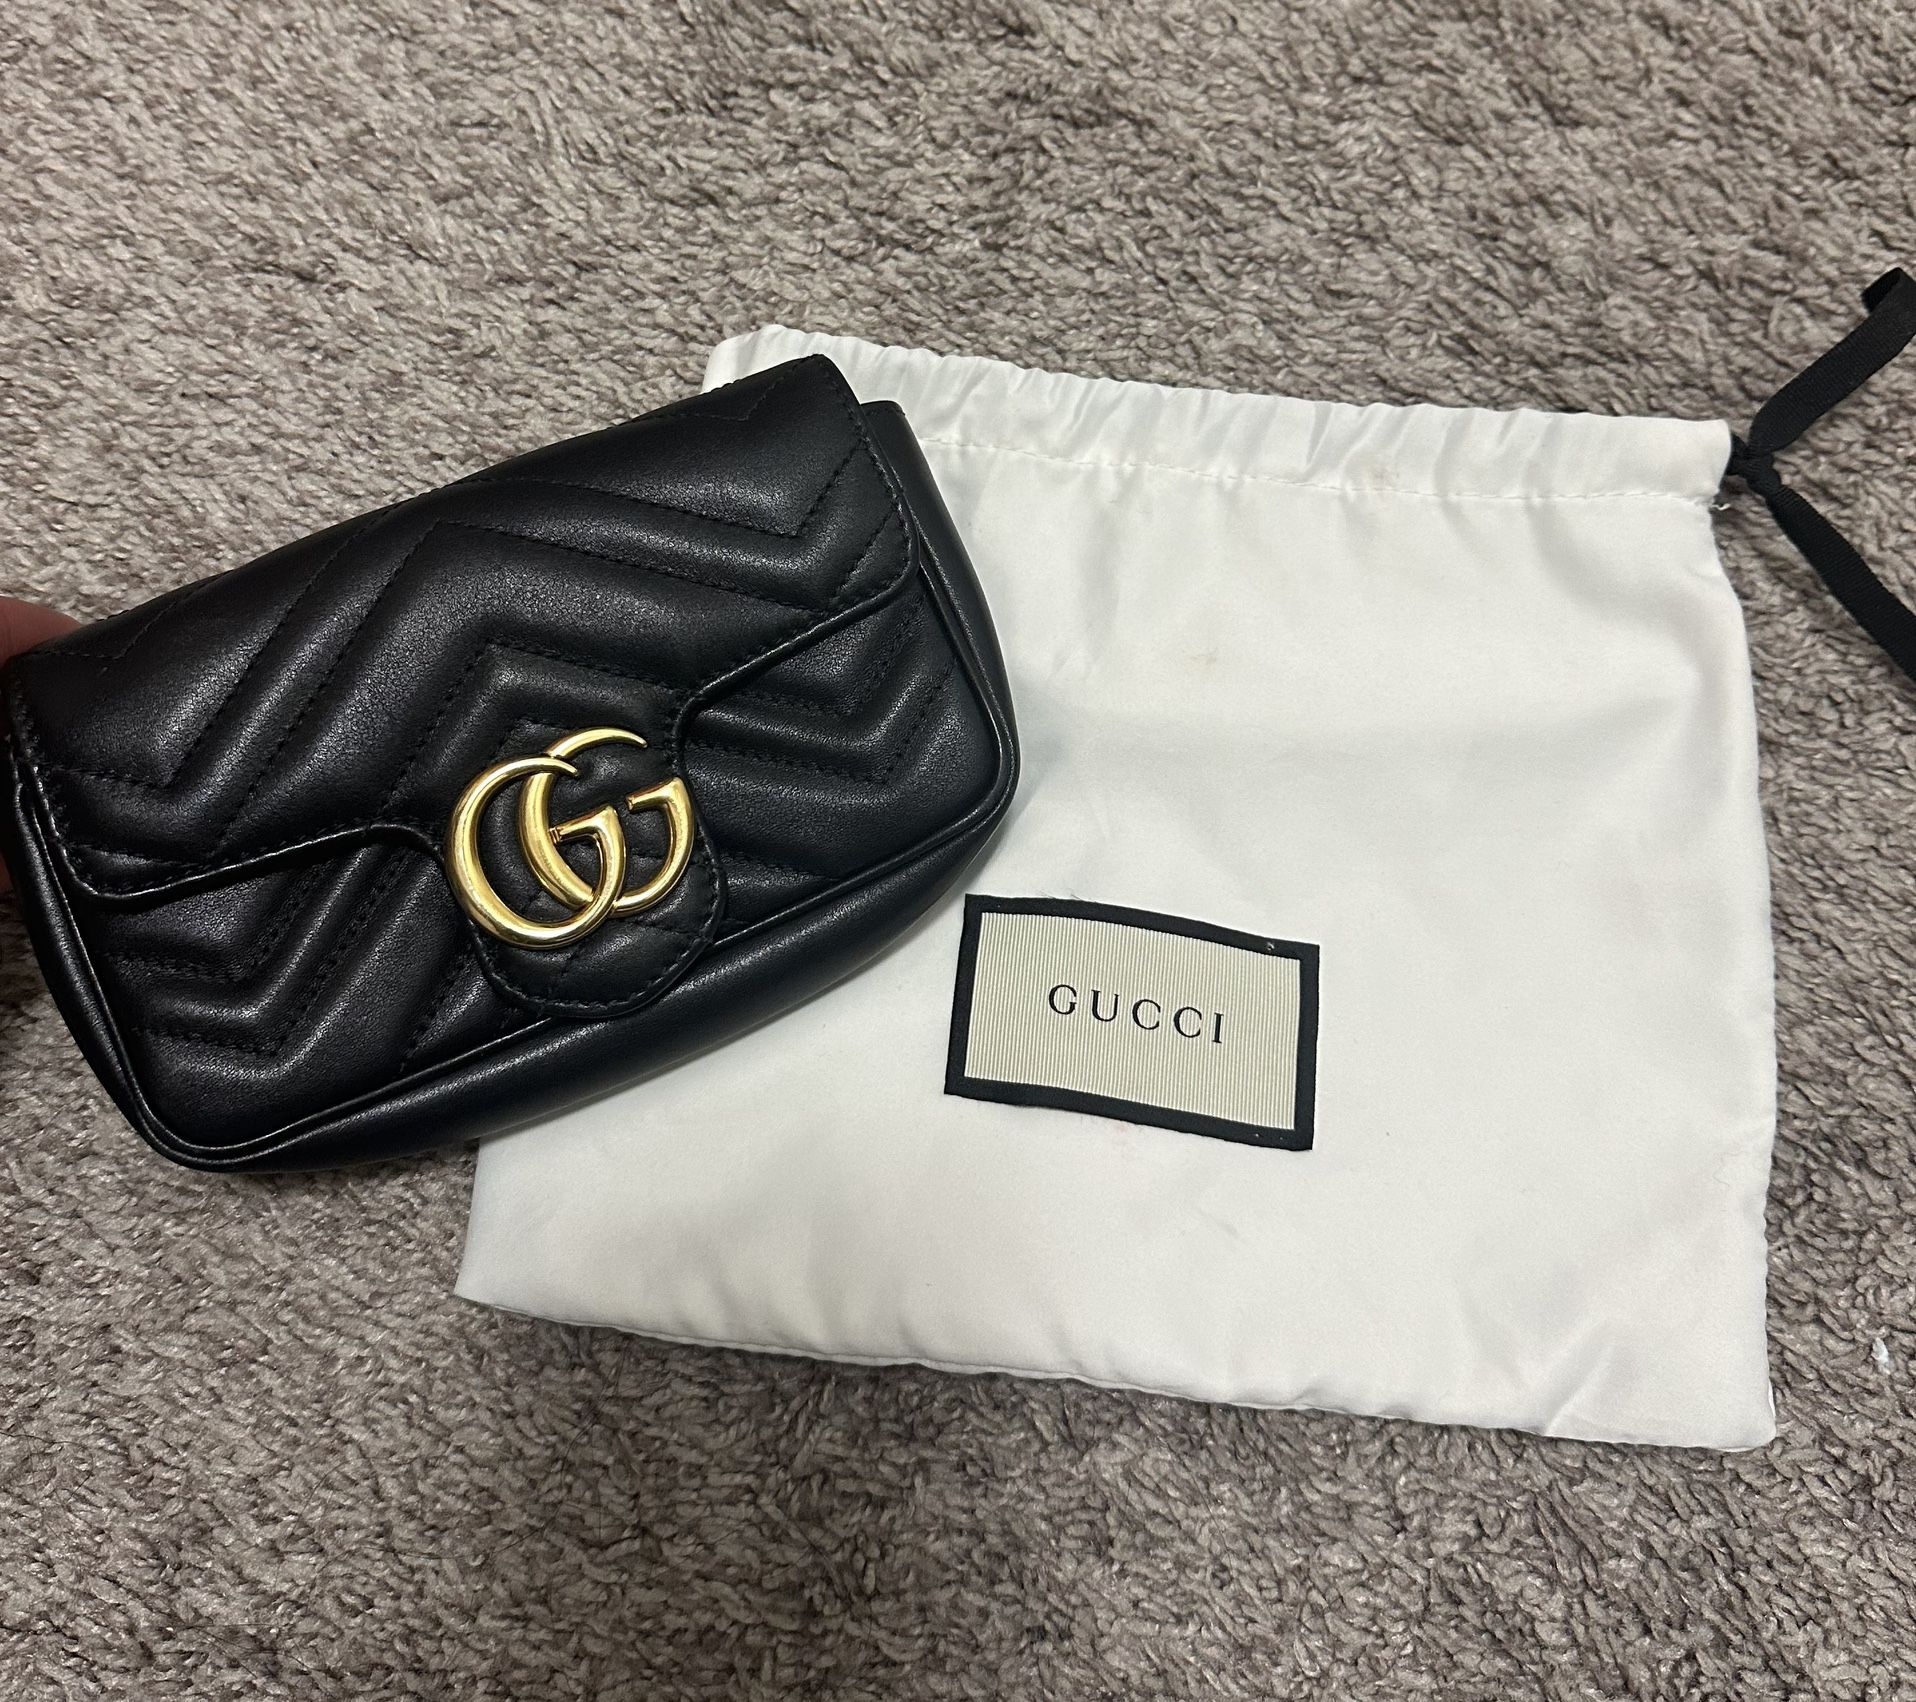 Gucci Mini Bag Authentic 